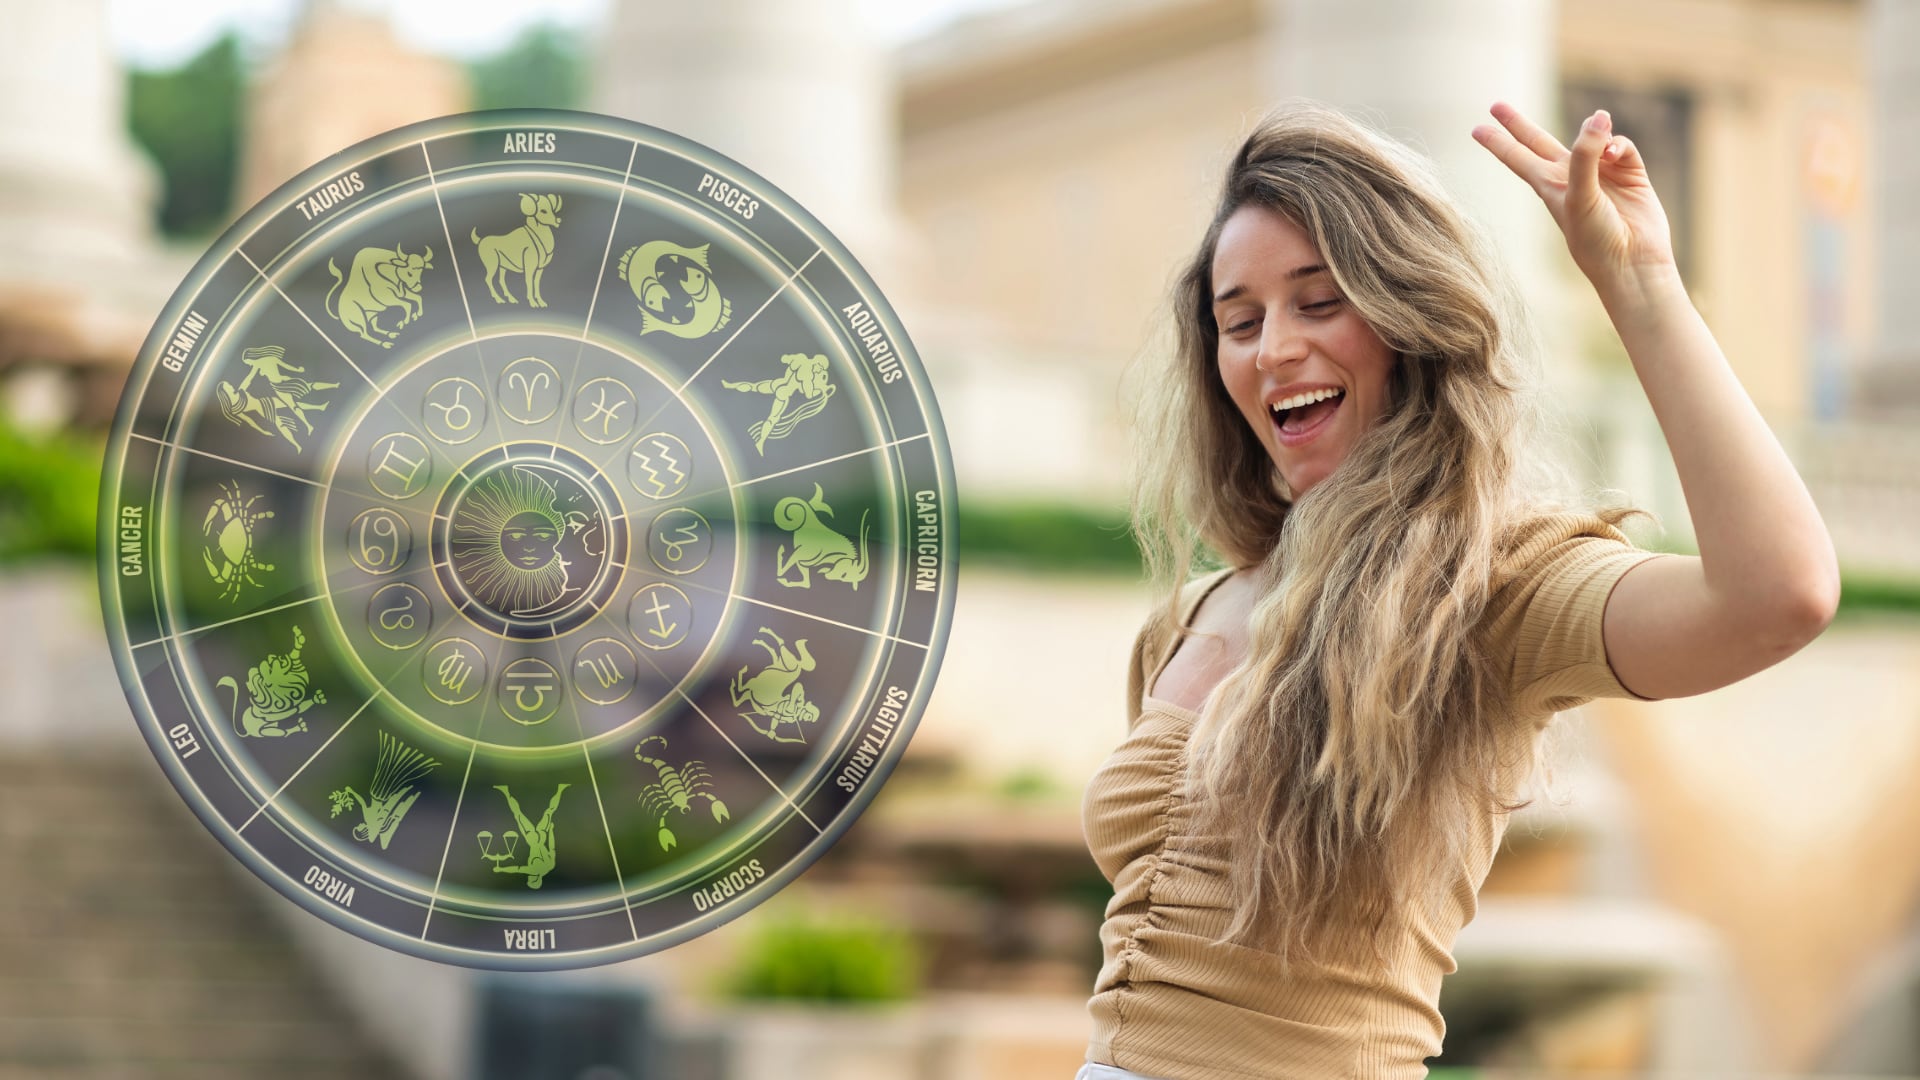 El año bisiesto cambiará la fortuna y el éxito de 5 signos del zodiaco.